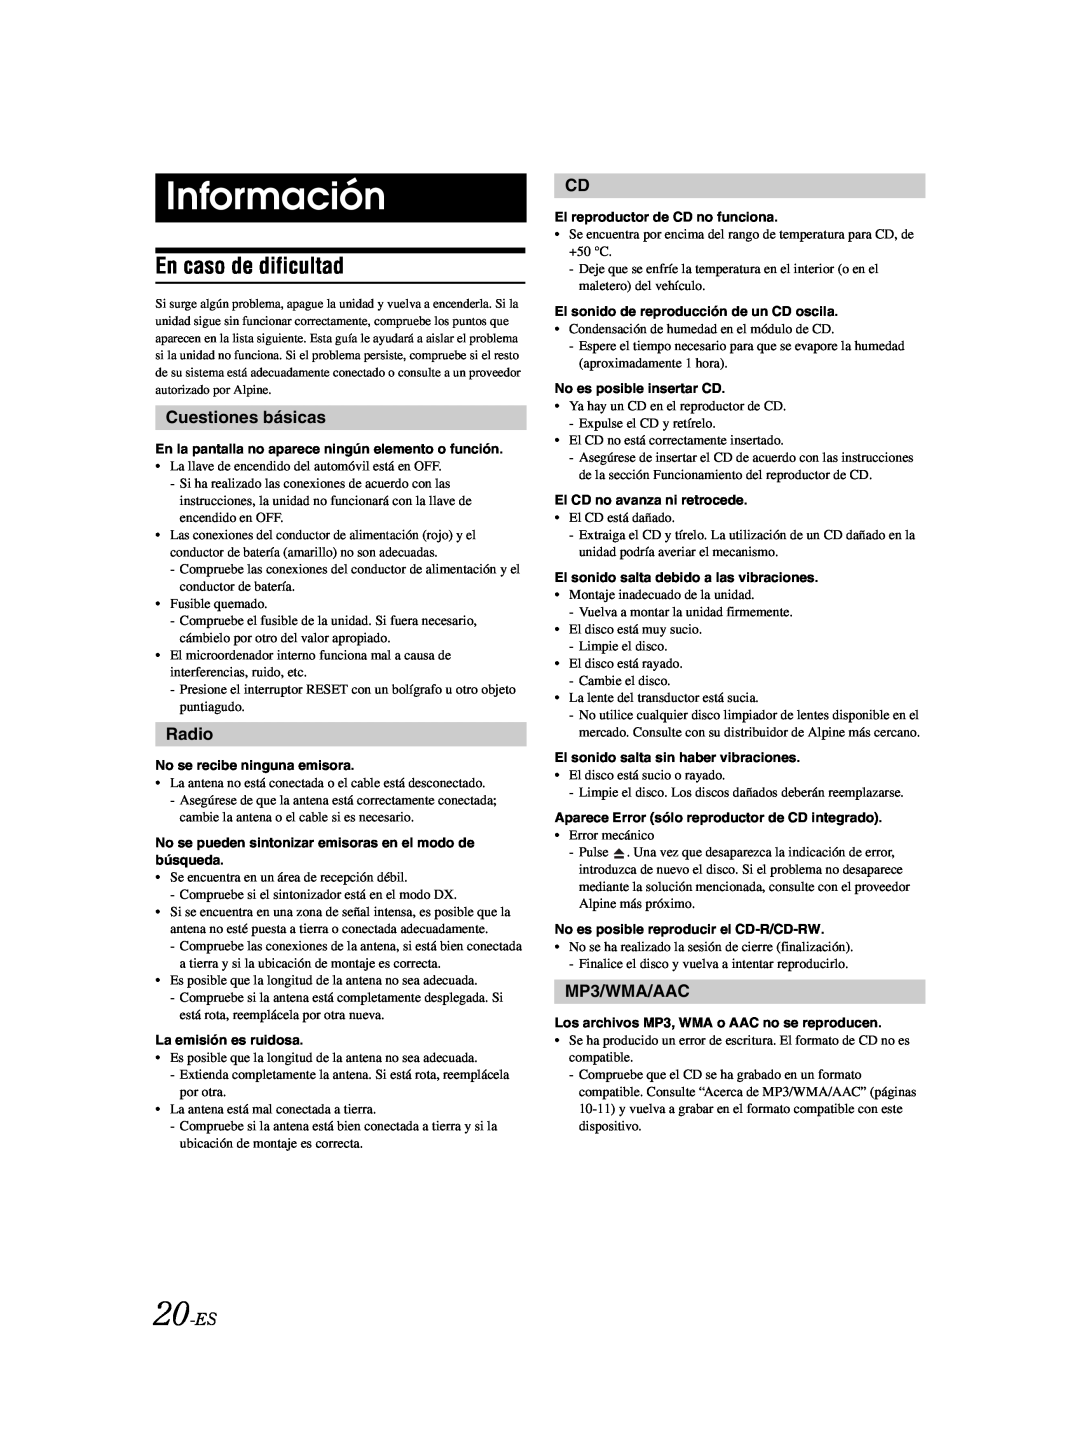 Alpine CDE-9881 owner manual Información, En caso de dificultad, Cuestiones básicas, 20-ES, Radio, MP3/WMA/AAC 